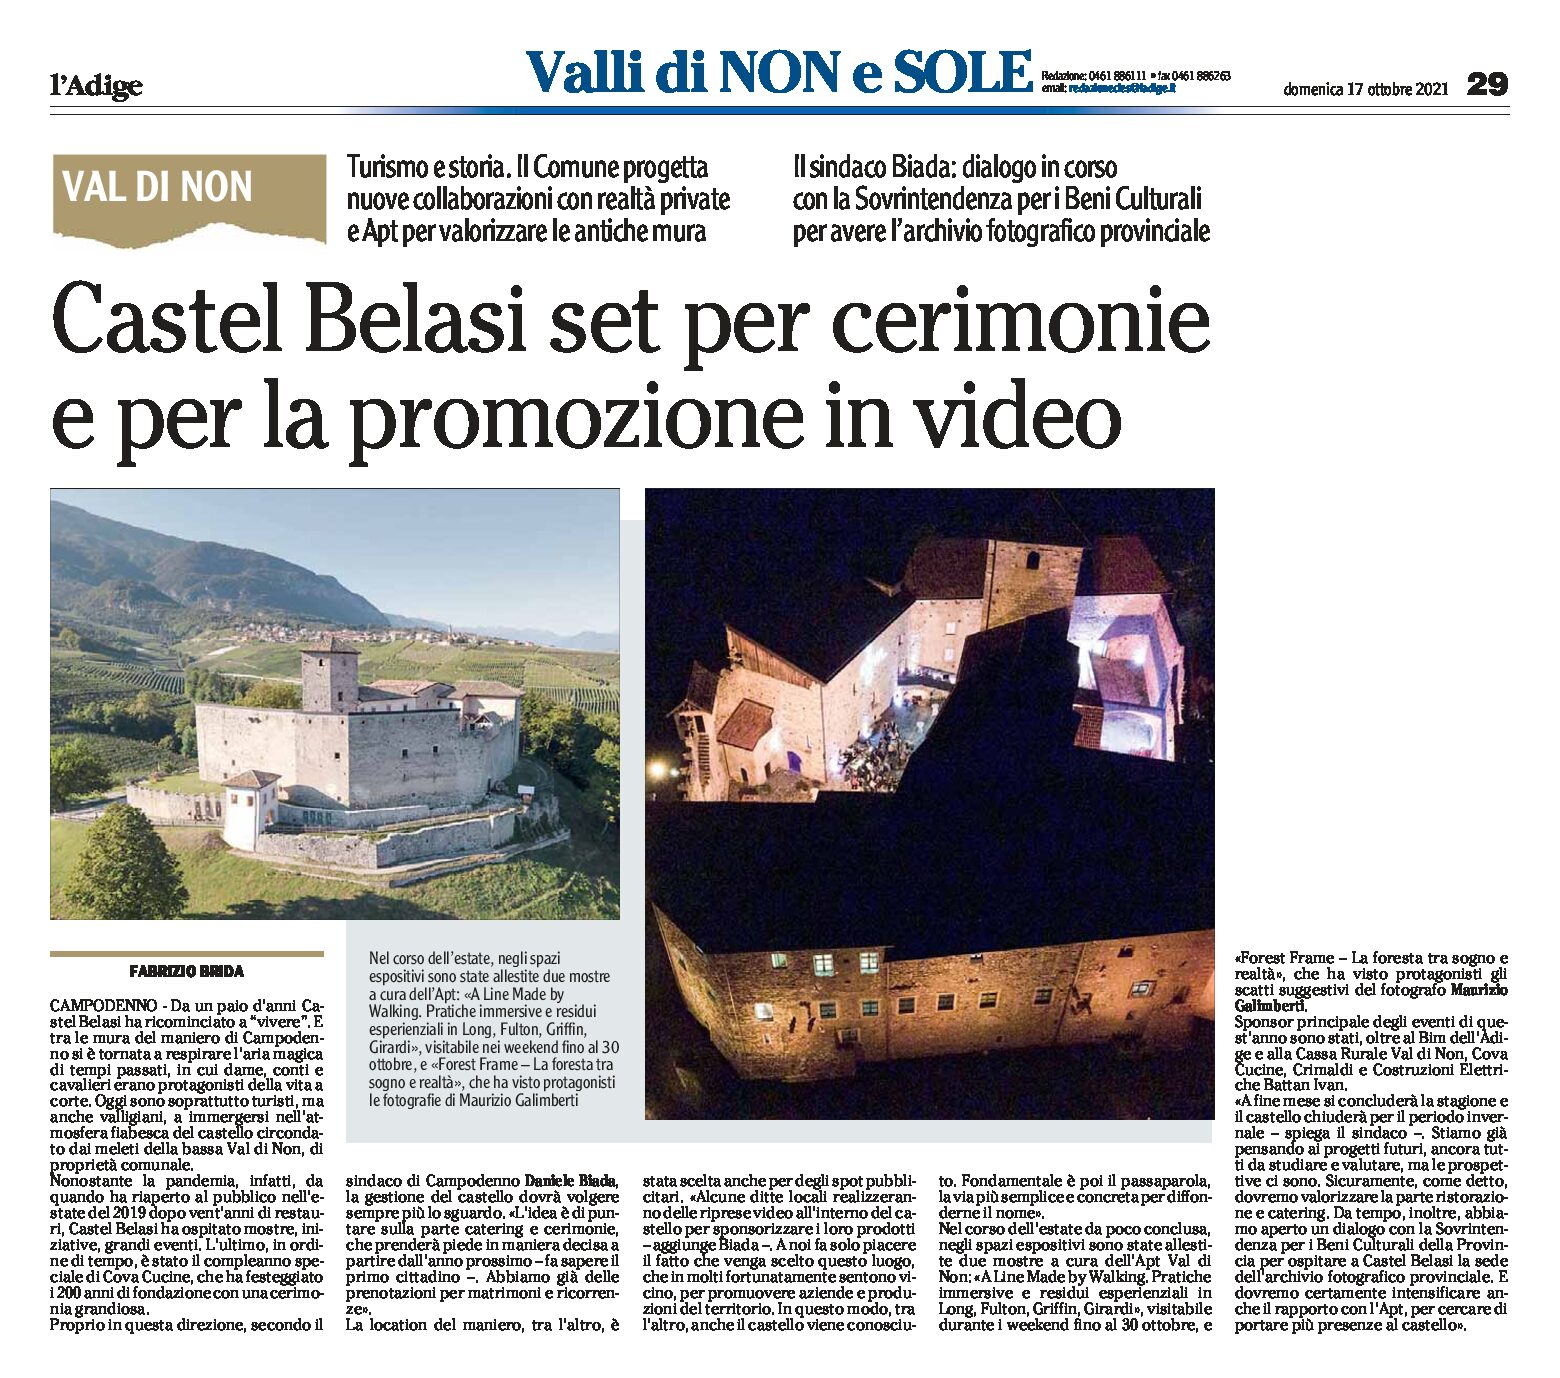 Castel Belasi: set per cerimonie e per la promozione in video